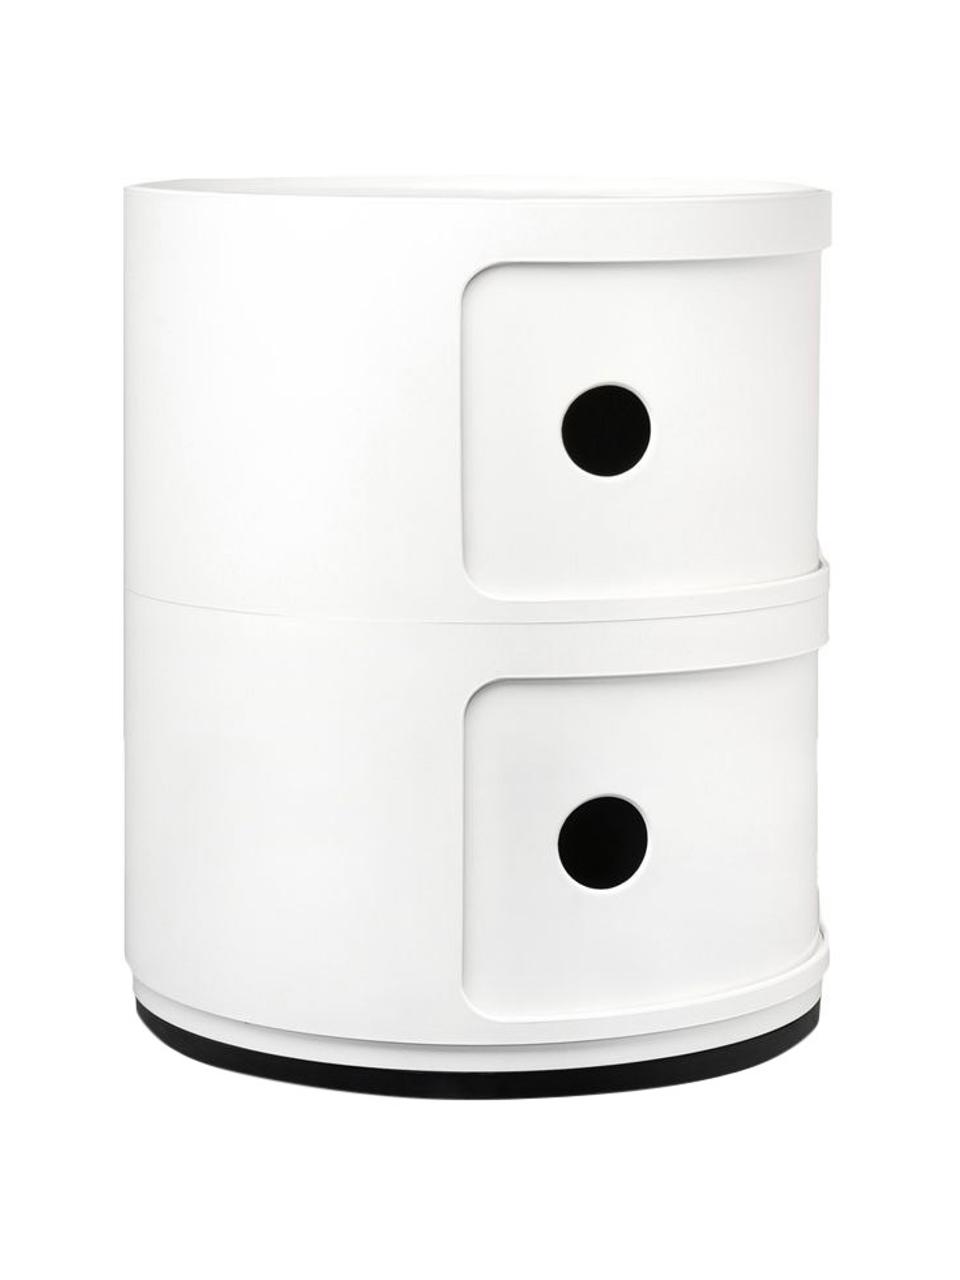 Design Container Componibili 2 Modules in Weiß, Thermoplastisches Technopolymer aus recyceltem Industrieausschuss, Greenguard-zertifiziert, Weiß, matt, Ø 32 x H 40 cm